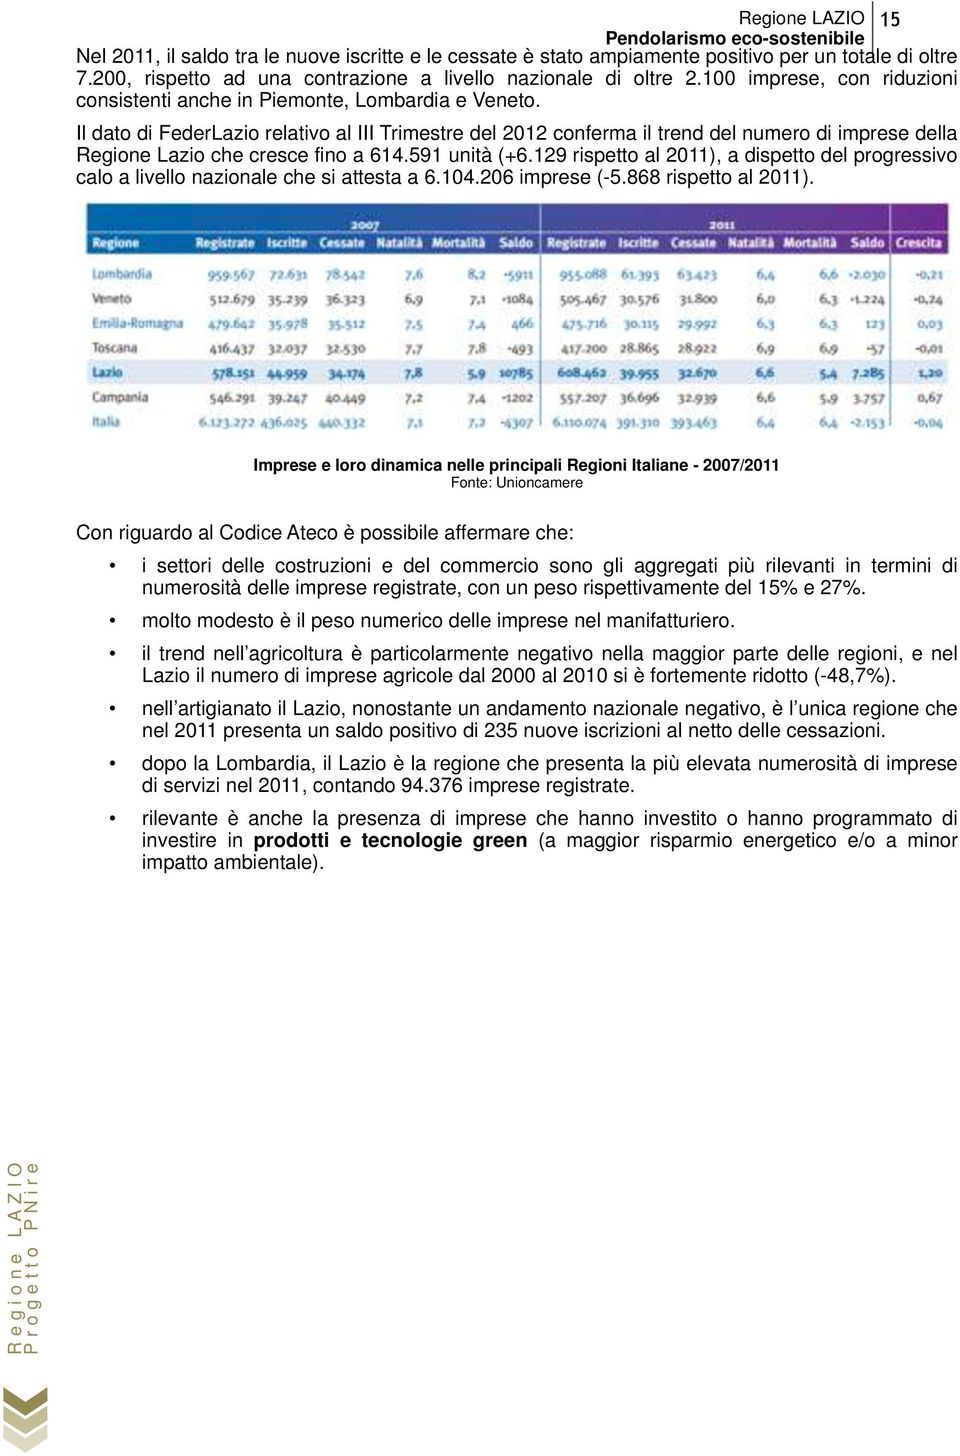 Il dato di FederLazio relativo al III Trimestre del 2012 conferma il trend del numero di imprese della Regione Lazio che cresce fino a 614.591 unità (+6.